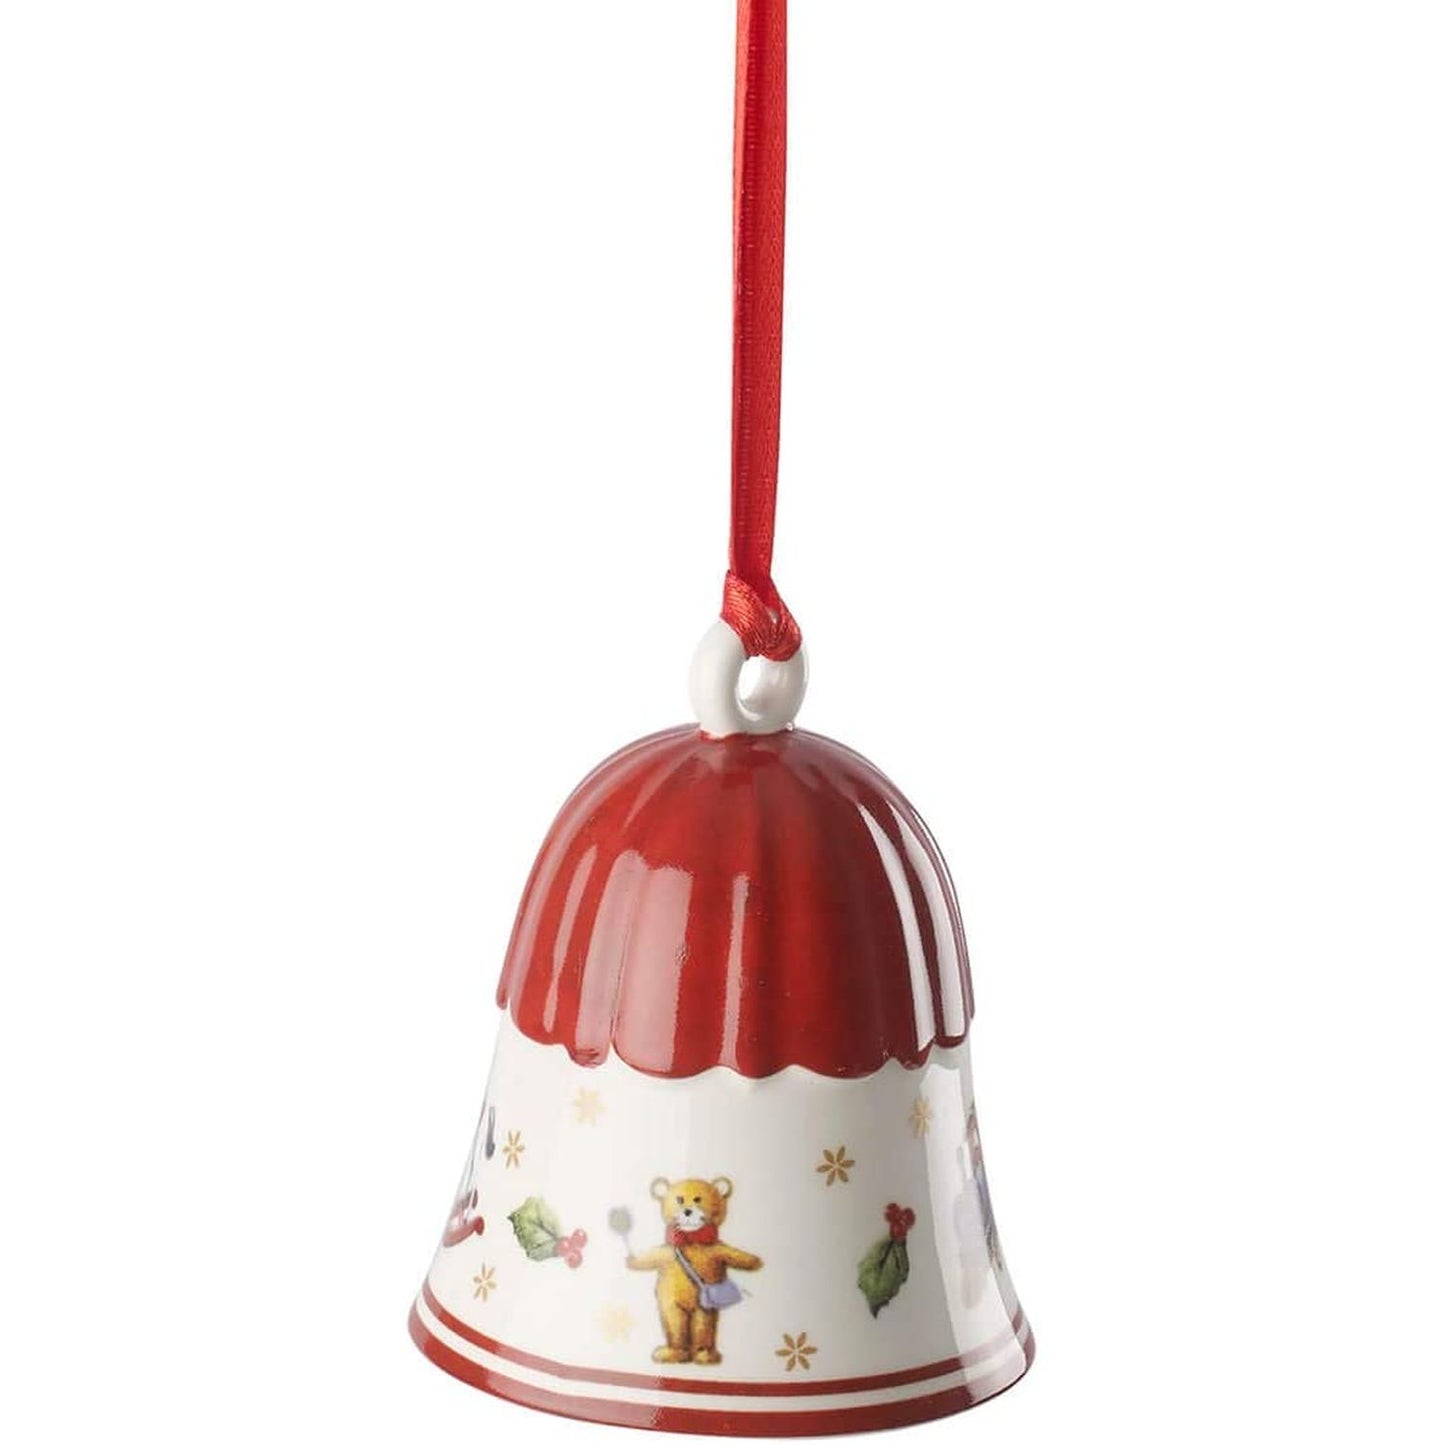 Villeroy & Boch Toys Delight Decoration Bell